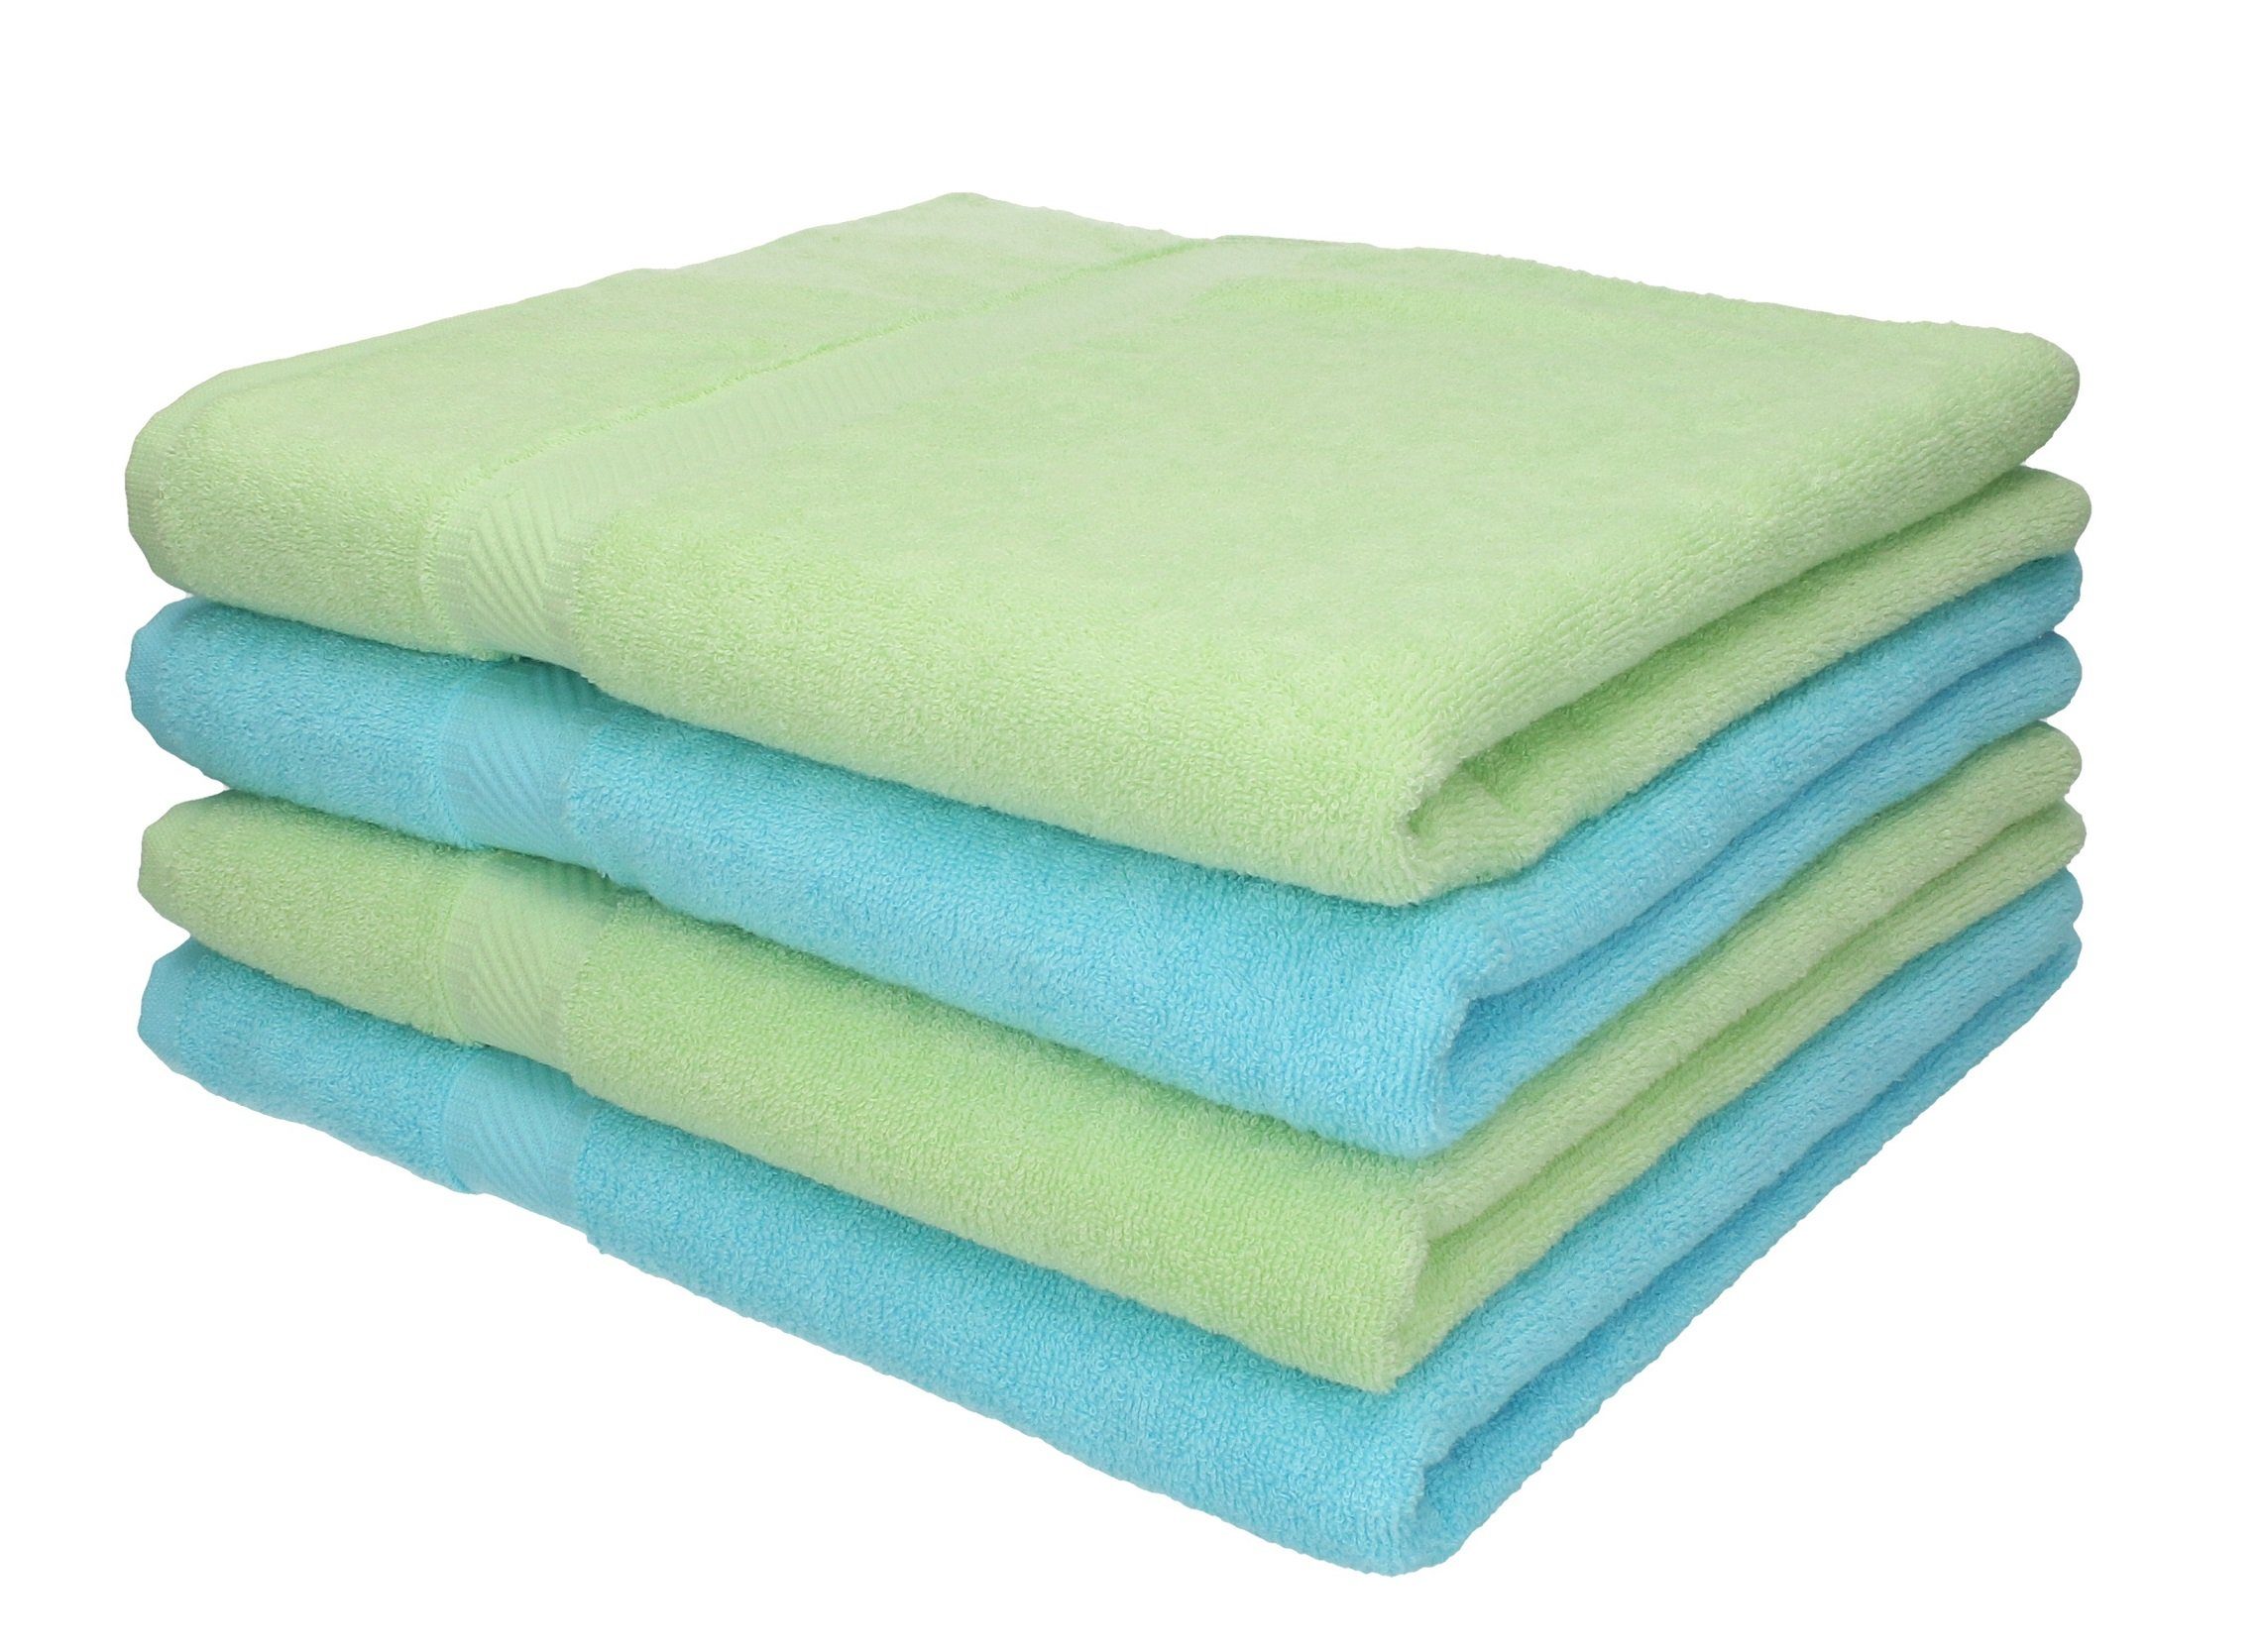 Betz Duschtücher 4 Stück Duschtücher Duschtuch-Set Palermo Farbe grün und türkis, 100% Baumwolle